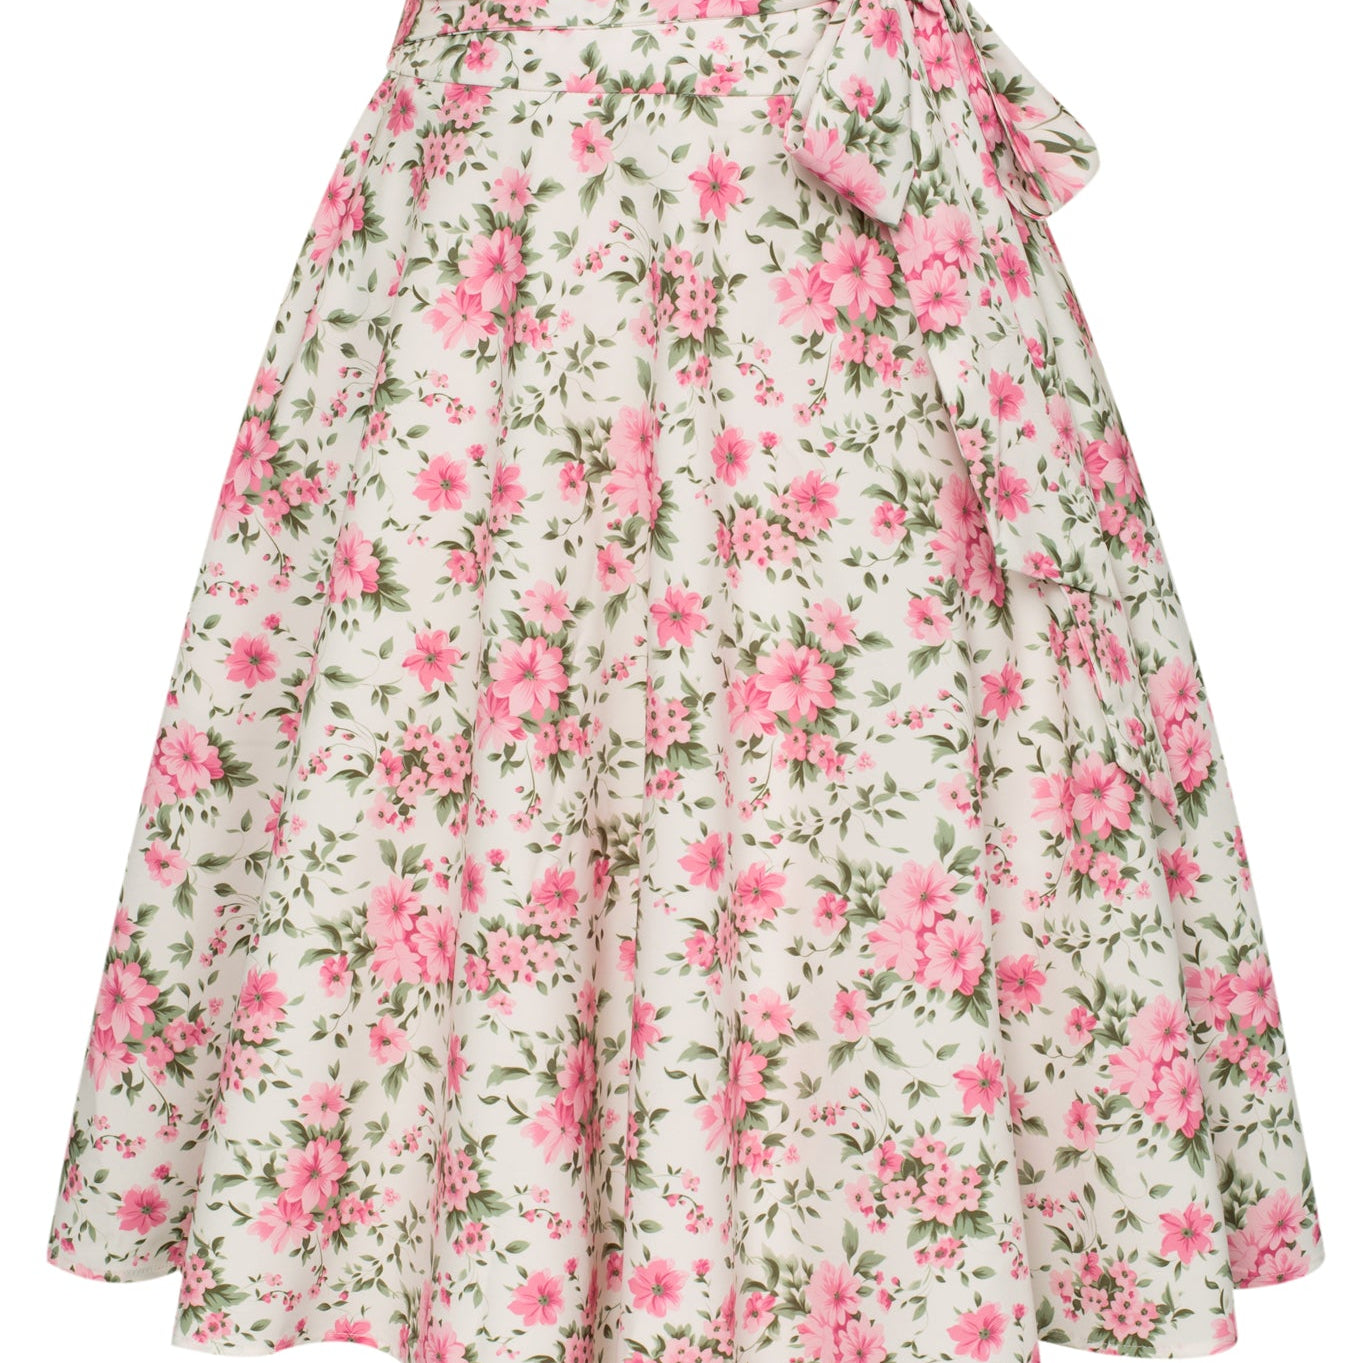 Floral Patterns Women's High Waist A-Line Pockets Skirt